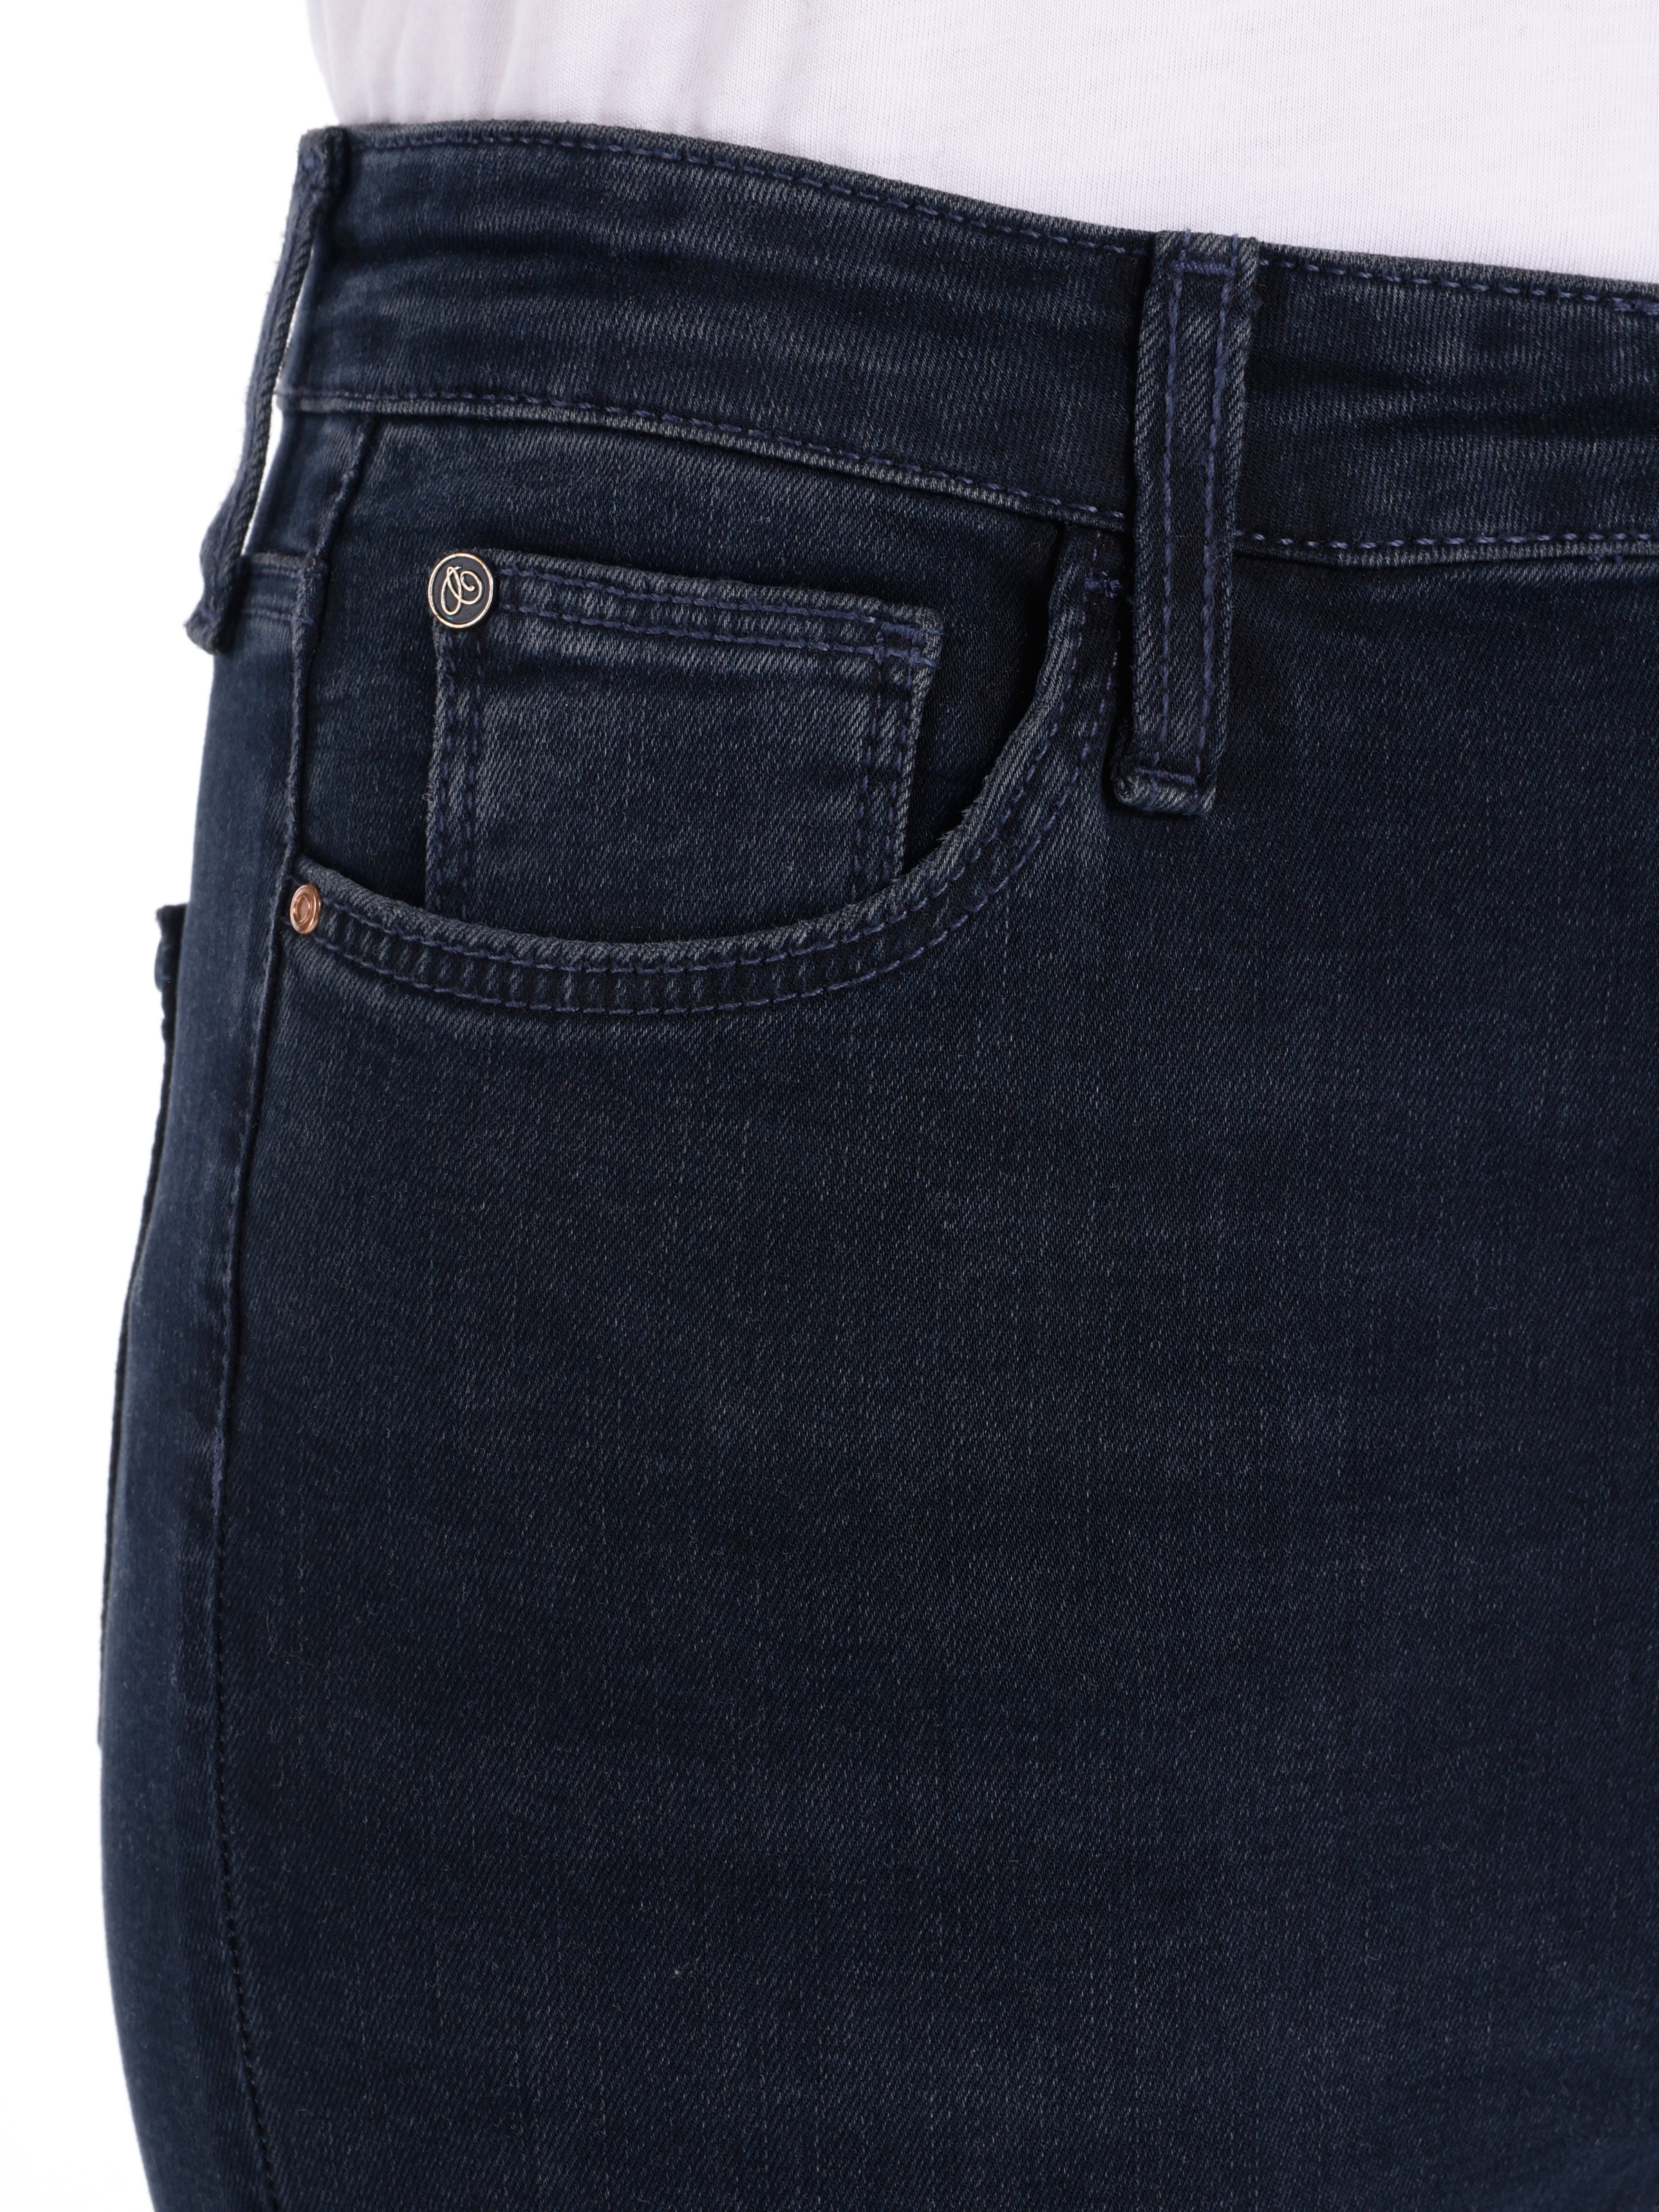 Afișați detalii pentru Pantaloni De Dama Denim Skinny Fit 760 DIANA CL1066388